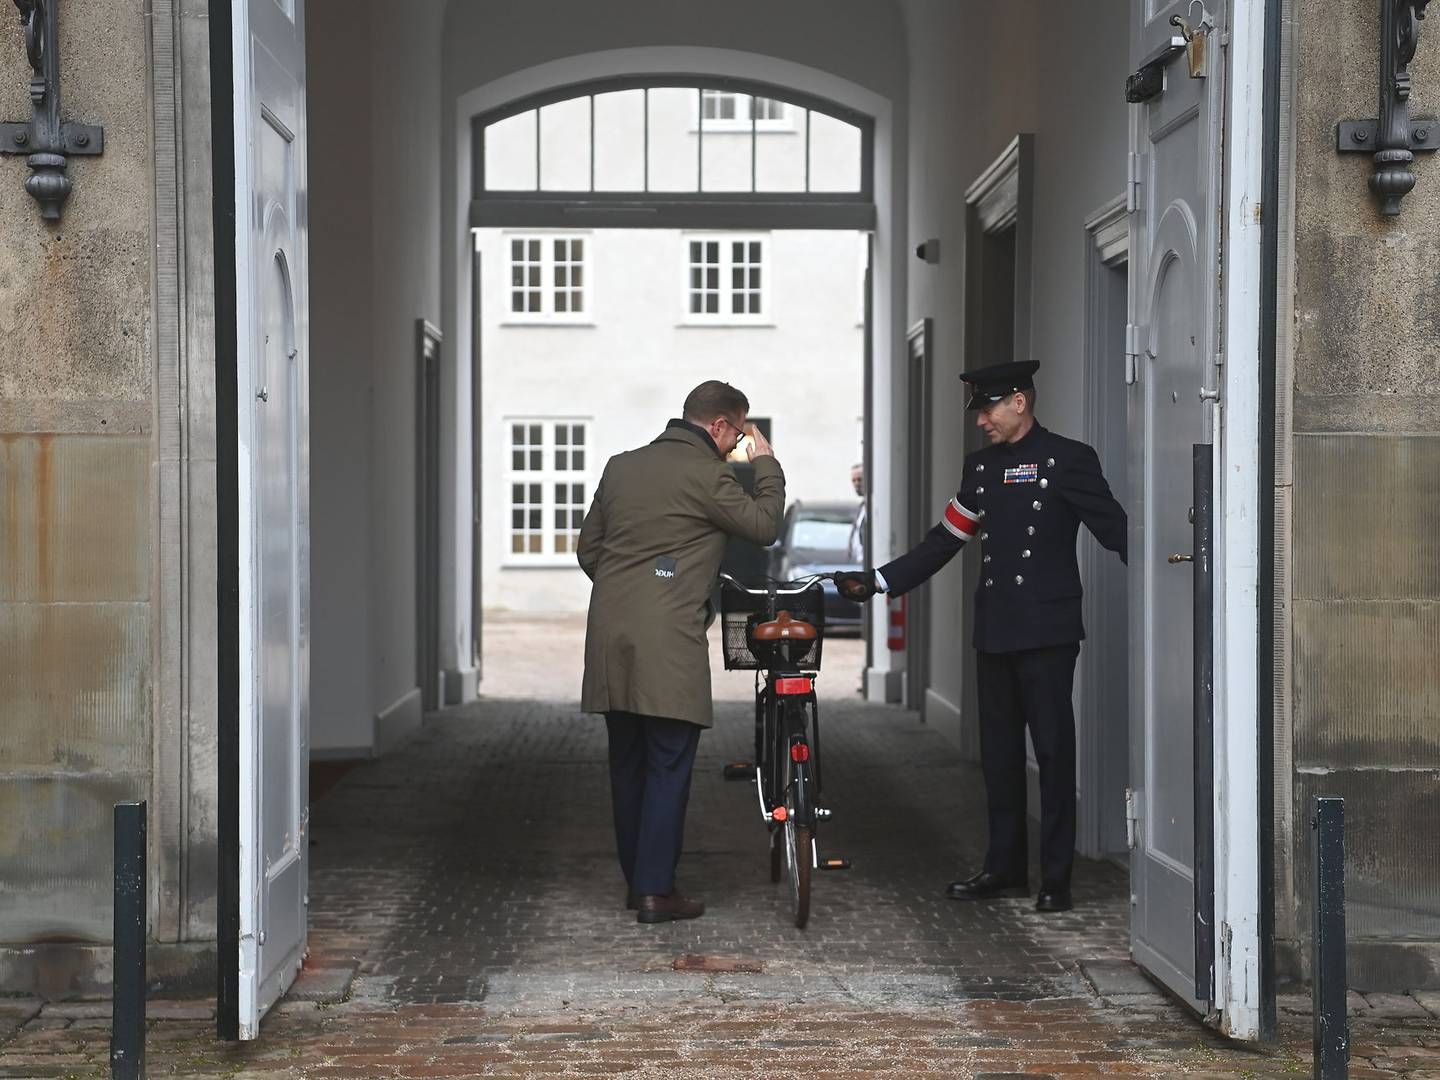 Afgående transportminister Benny Engelbrecht, der var på cykel, indgav sin afskedsbegæring til dronning Margrethe på Amalienborg Slot. | Foto: Thomas Sjørup/Ritzau Scanpix